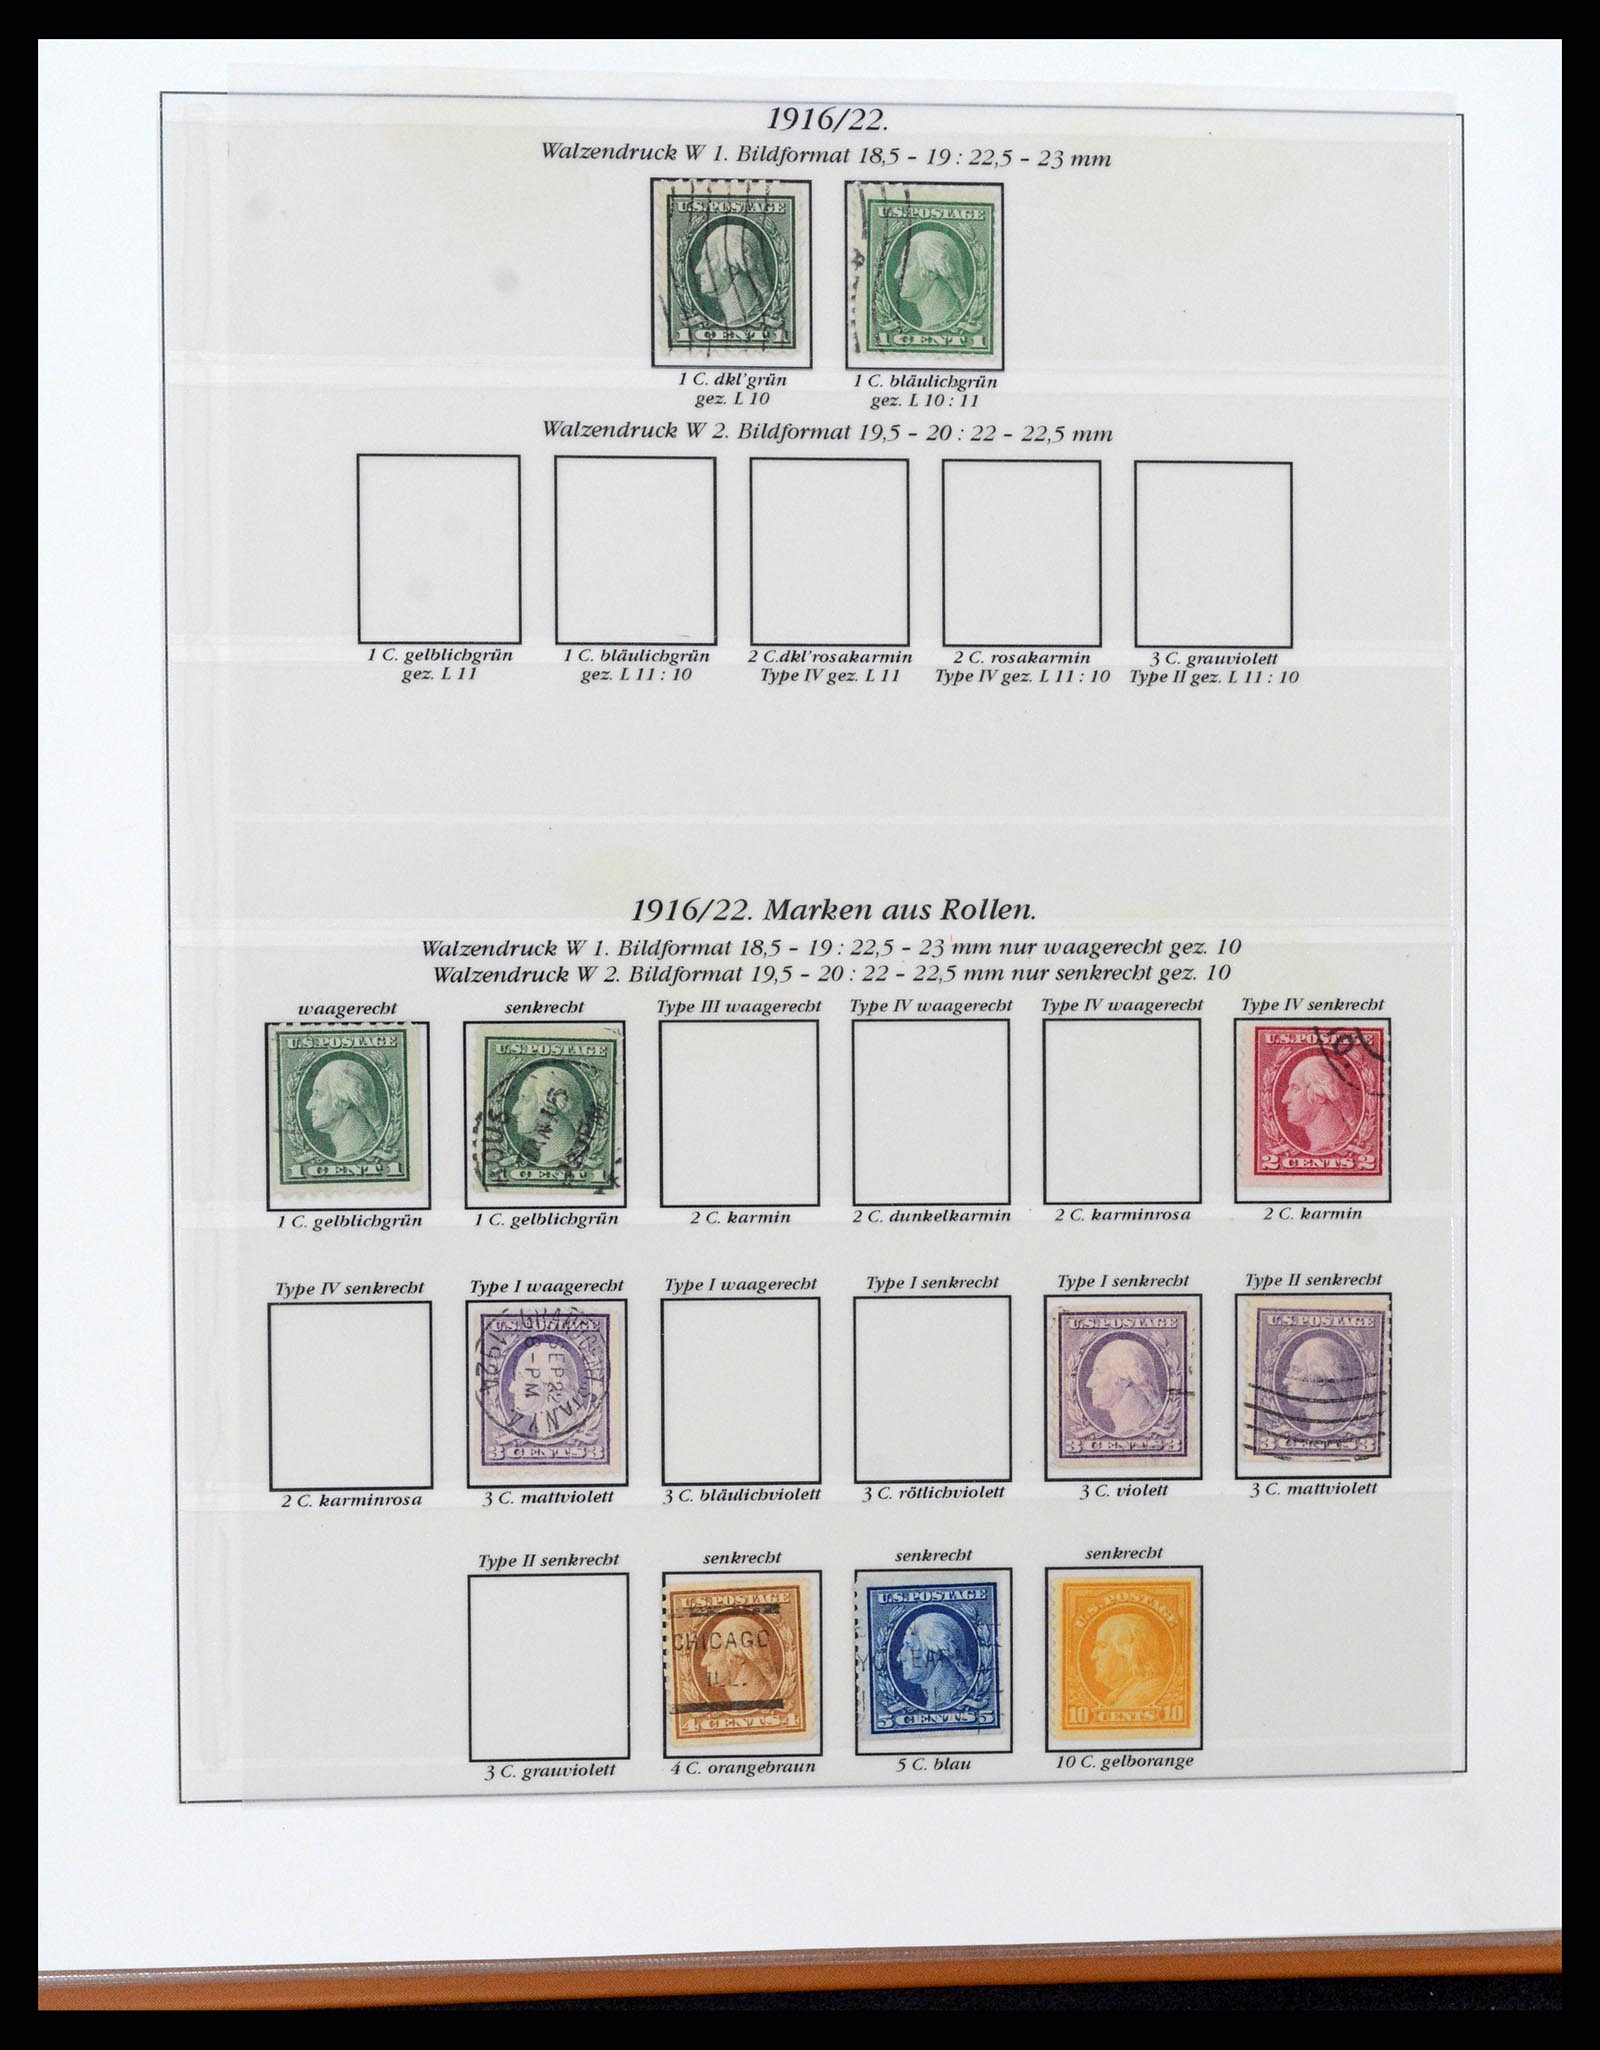 37653 057 - Stamp collection 37653 USA 1870-1954.